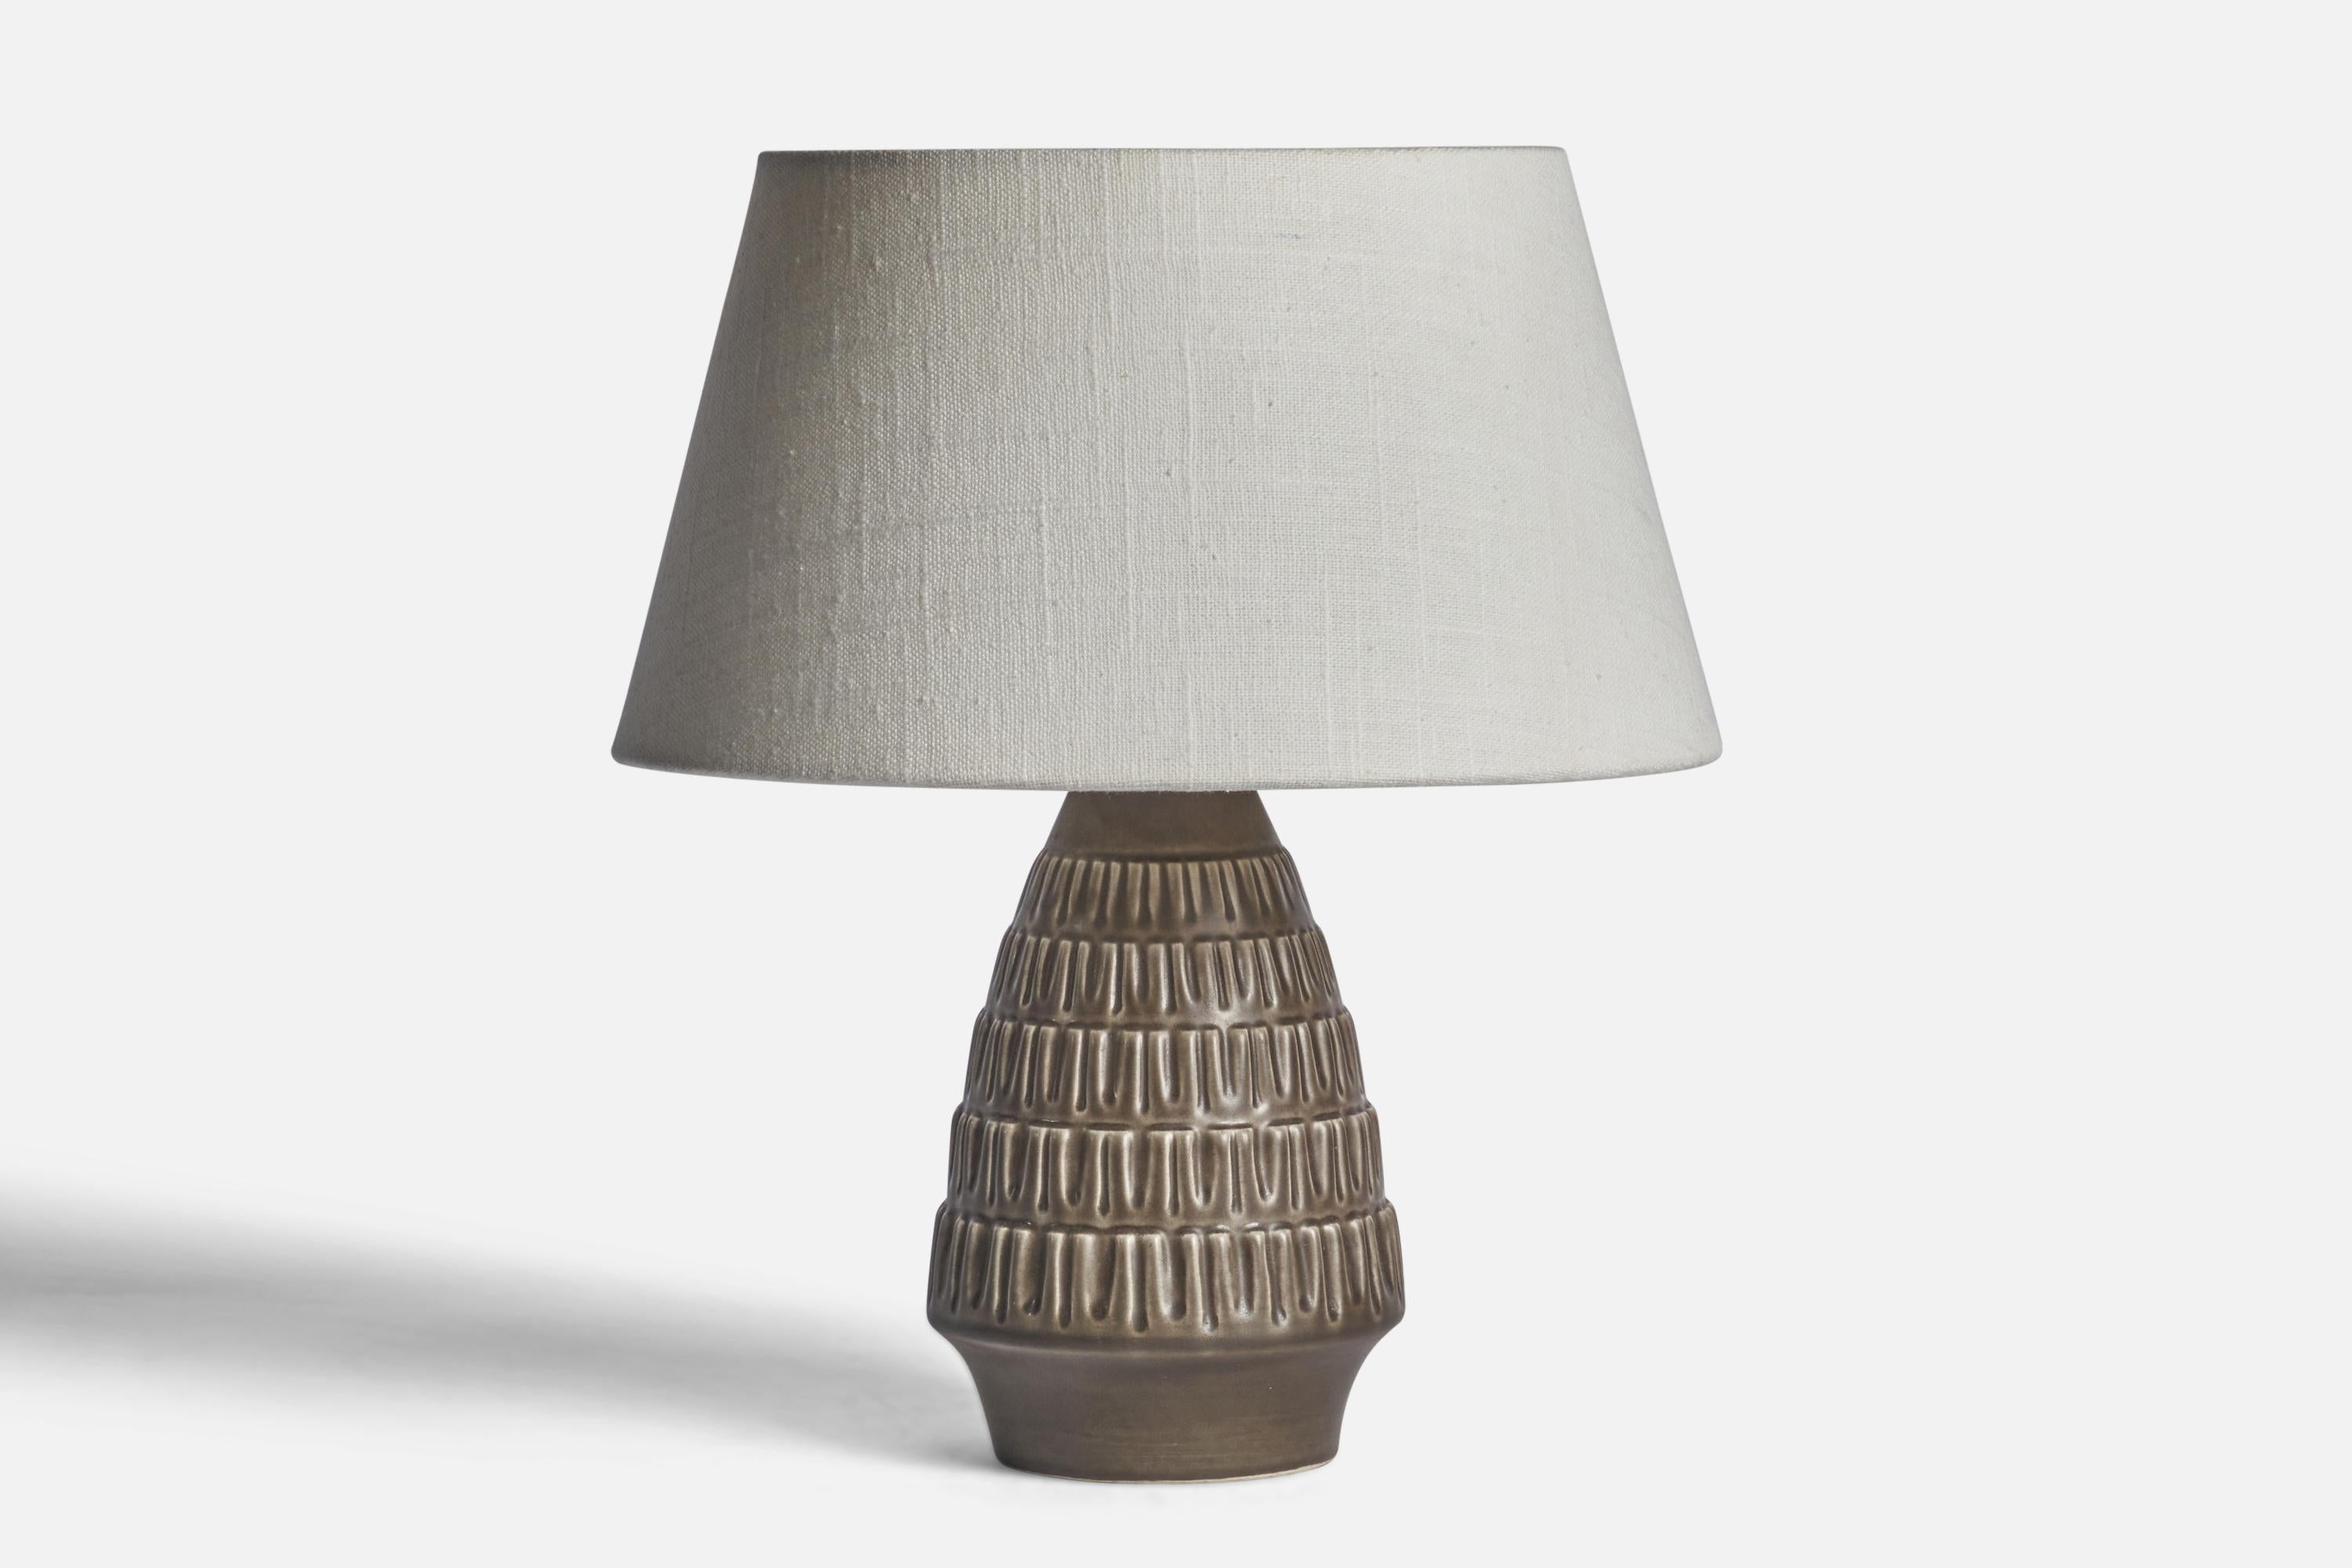 Lampe de table en grès émaillé gris, conçue et produite par 
Søholm, Danemark, années 1960.

Dimensions de la lampe (pouces) : 9.25